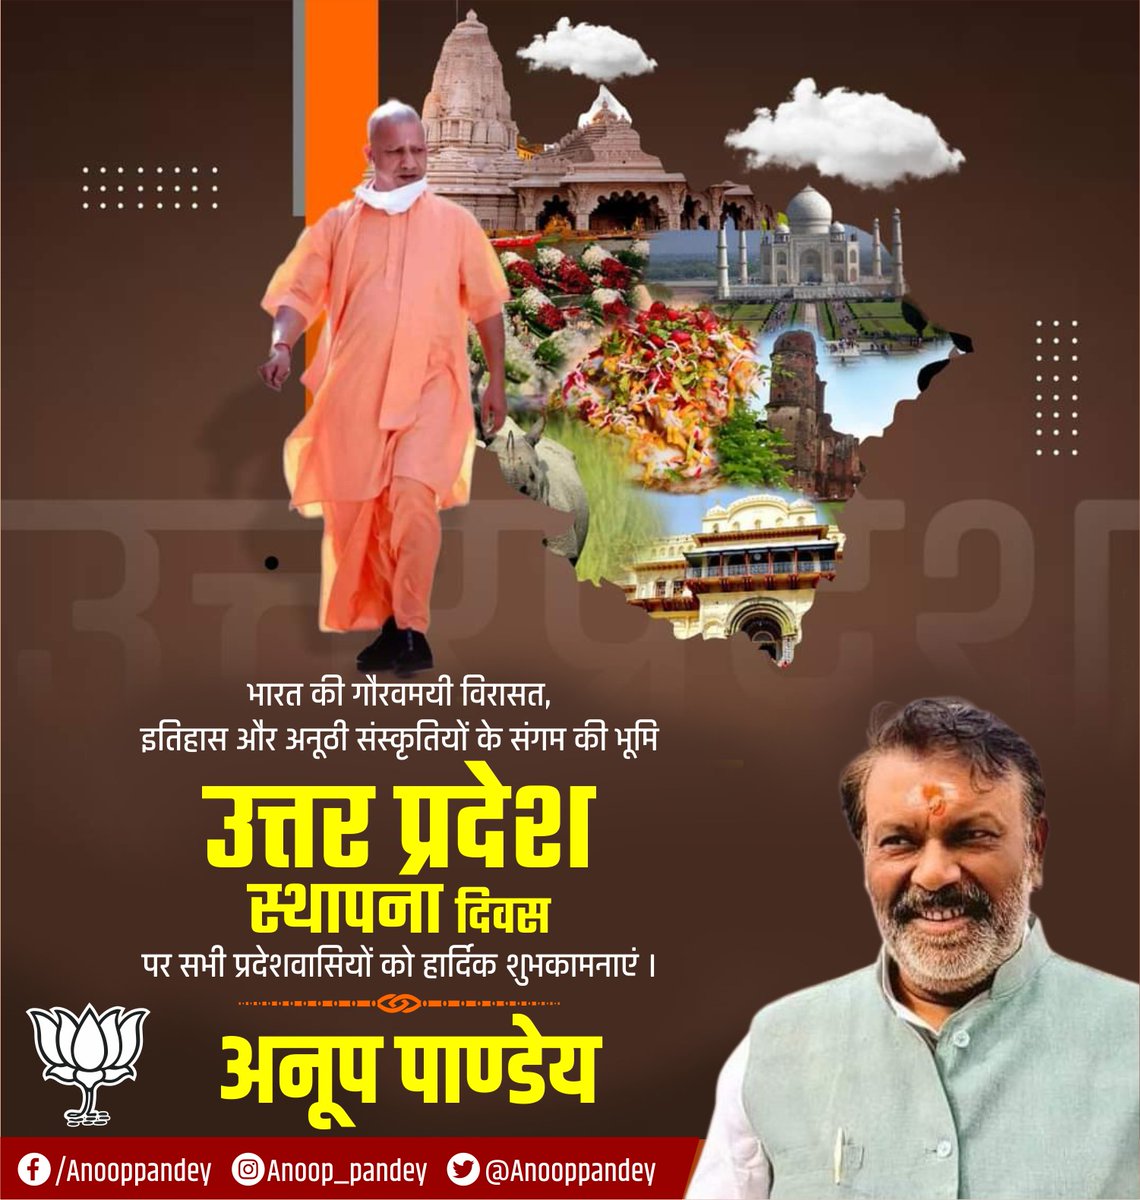 भारत की गौरवमयी विरासत,इतिहास और अनूठी संस्कृतियों के संगम की भूमि उत्तर प्रदेश स्थापना दिवस पर सभी प्रदेश वासियों को हार्दिक शुभकामनाएं ।

#UttarPradeshSthapnaDivas2024 #UPFoundationDay #RisingNewUP